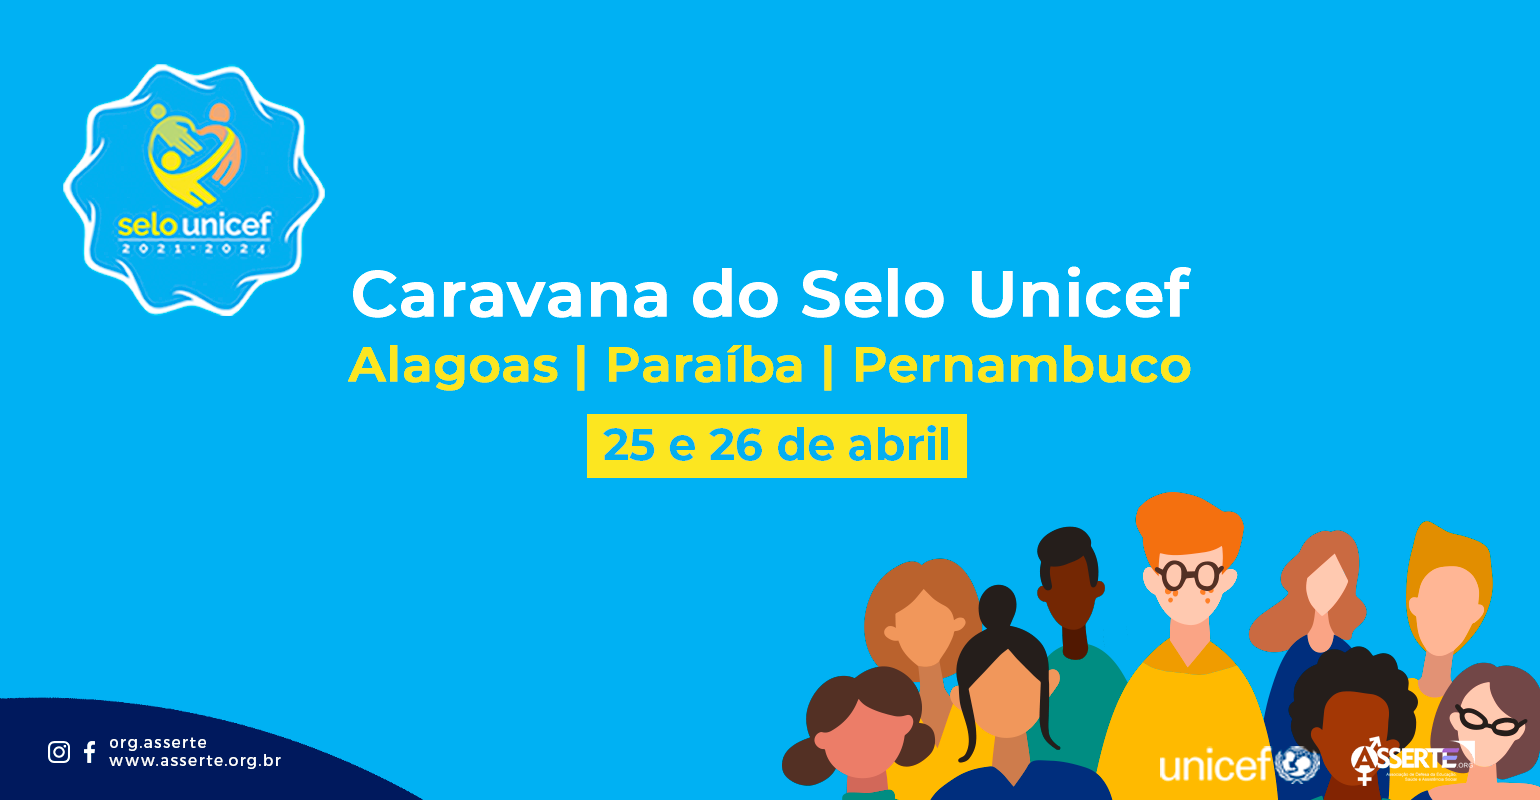 Caravana do Selo UNICEF visita municípios da Paraíba, Pernambuco e Alagoas